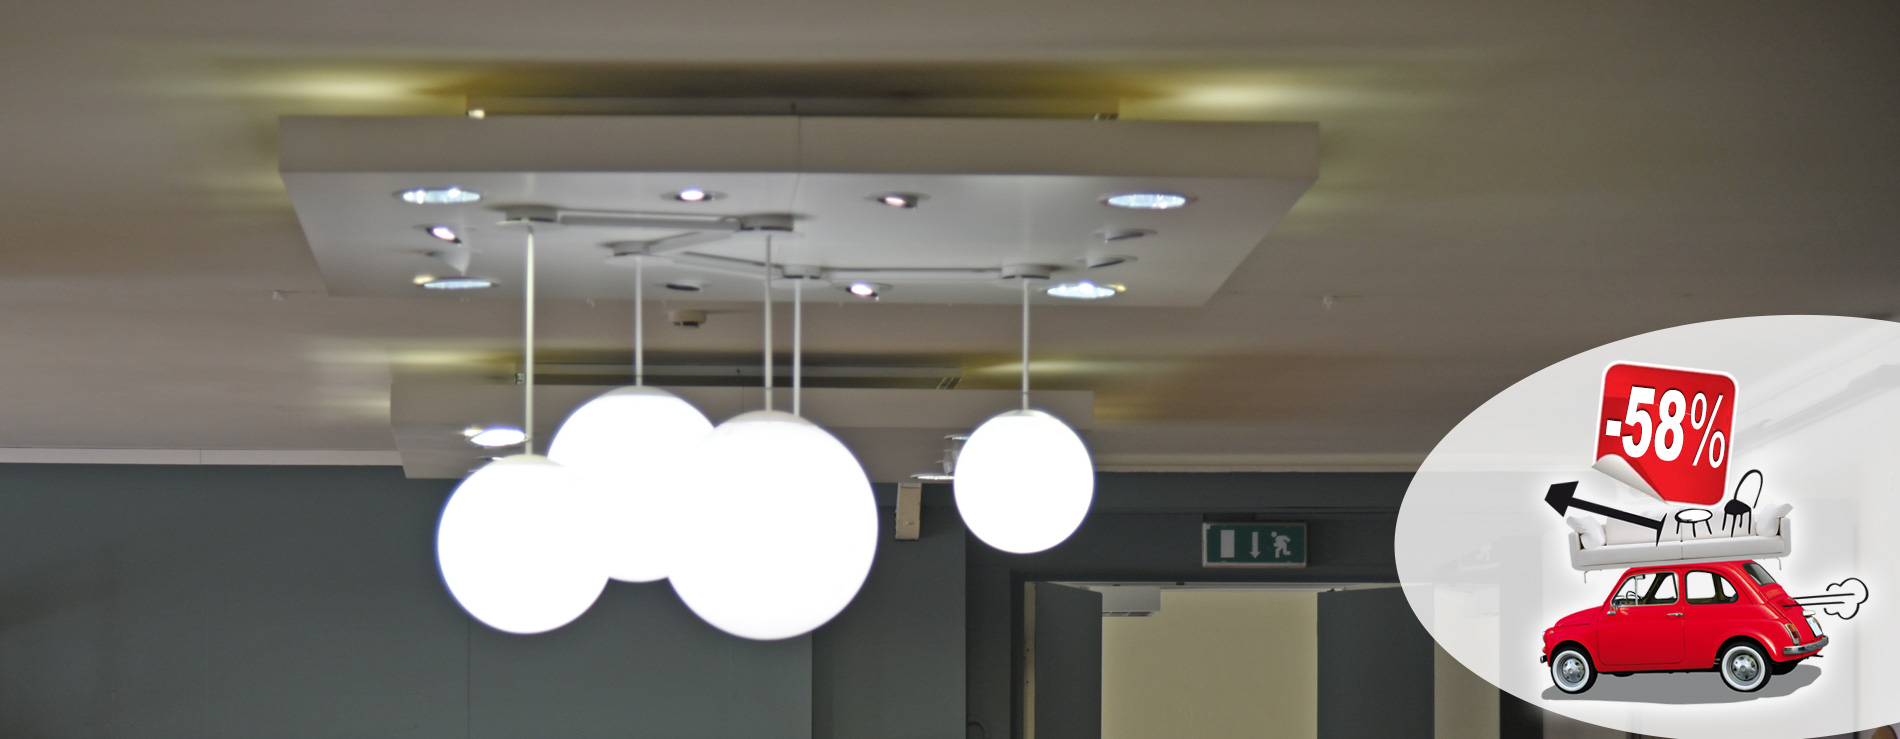 Direttamente dalla nostra esposizione, Lampadario Multiball Modo Luce composto da 5 globi in promozione!